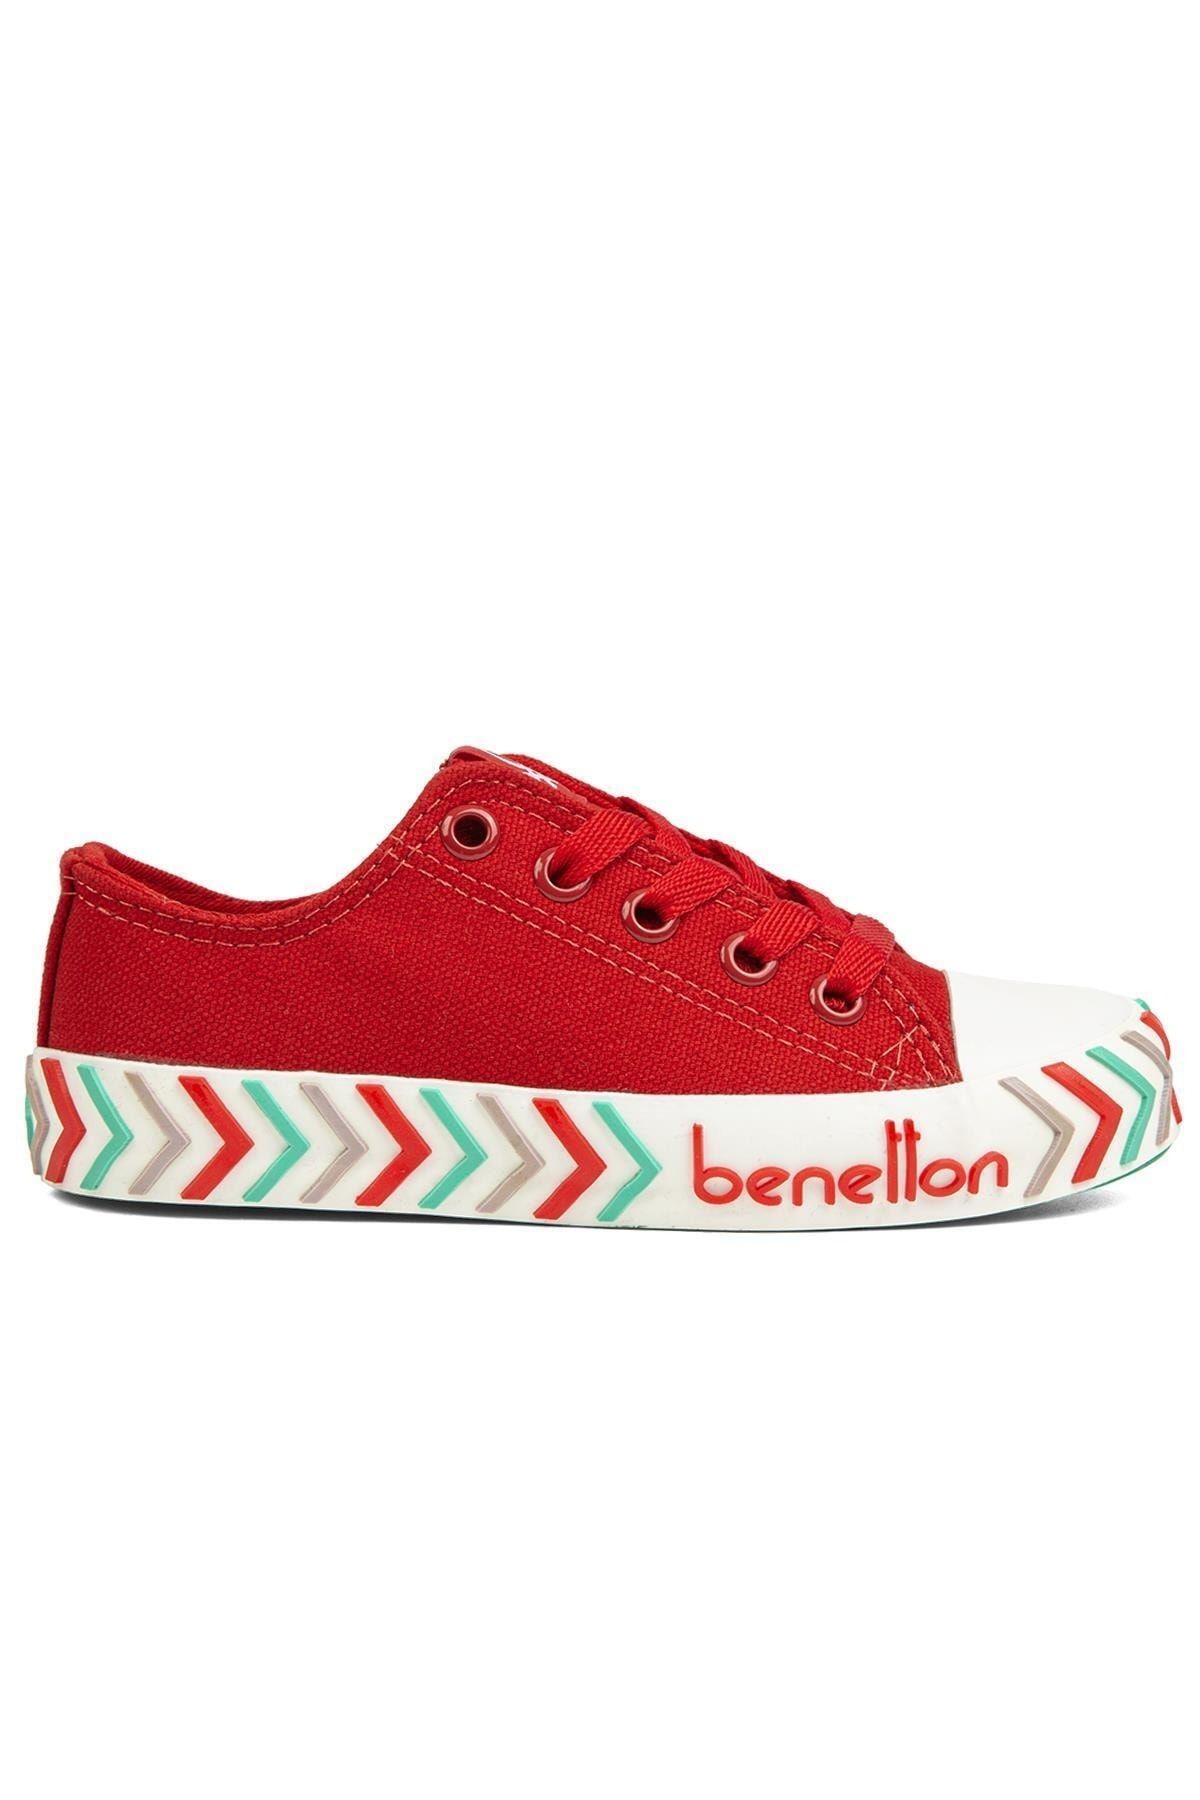 Benetton ® | BN-90635- Kirmizi - Çocuk Spor Ayakkabı